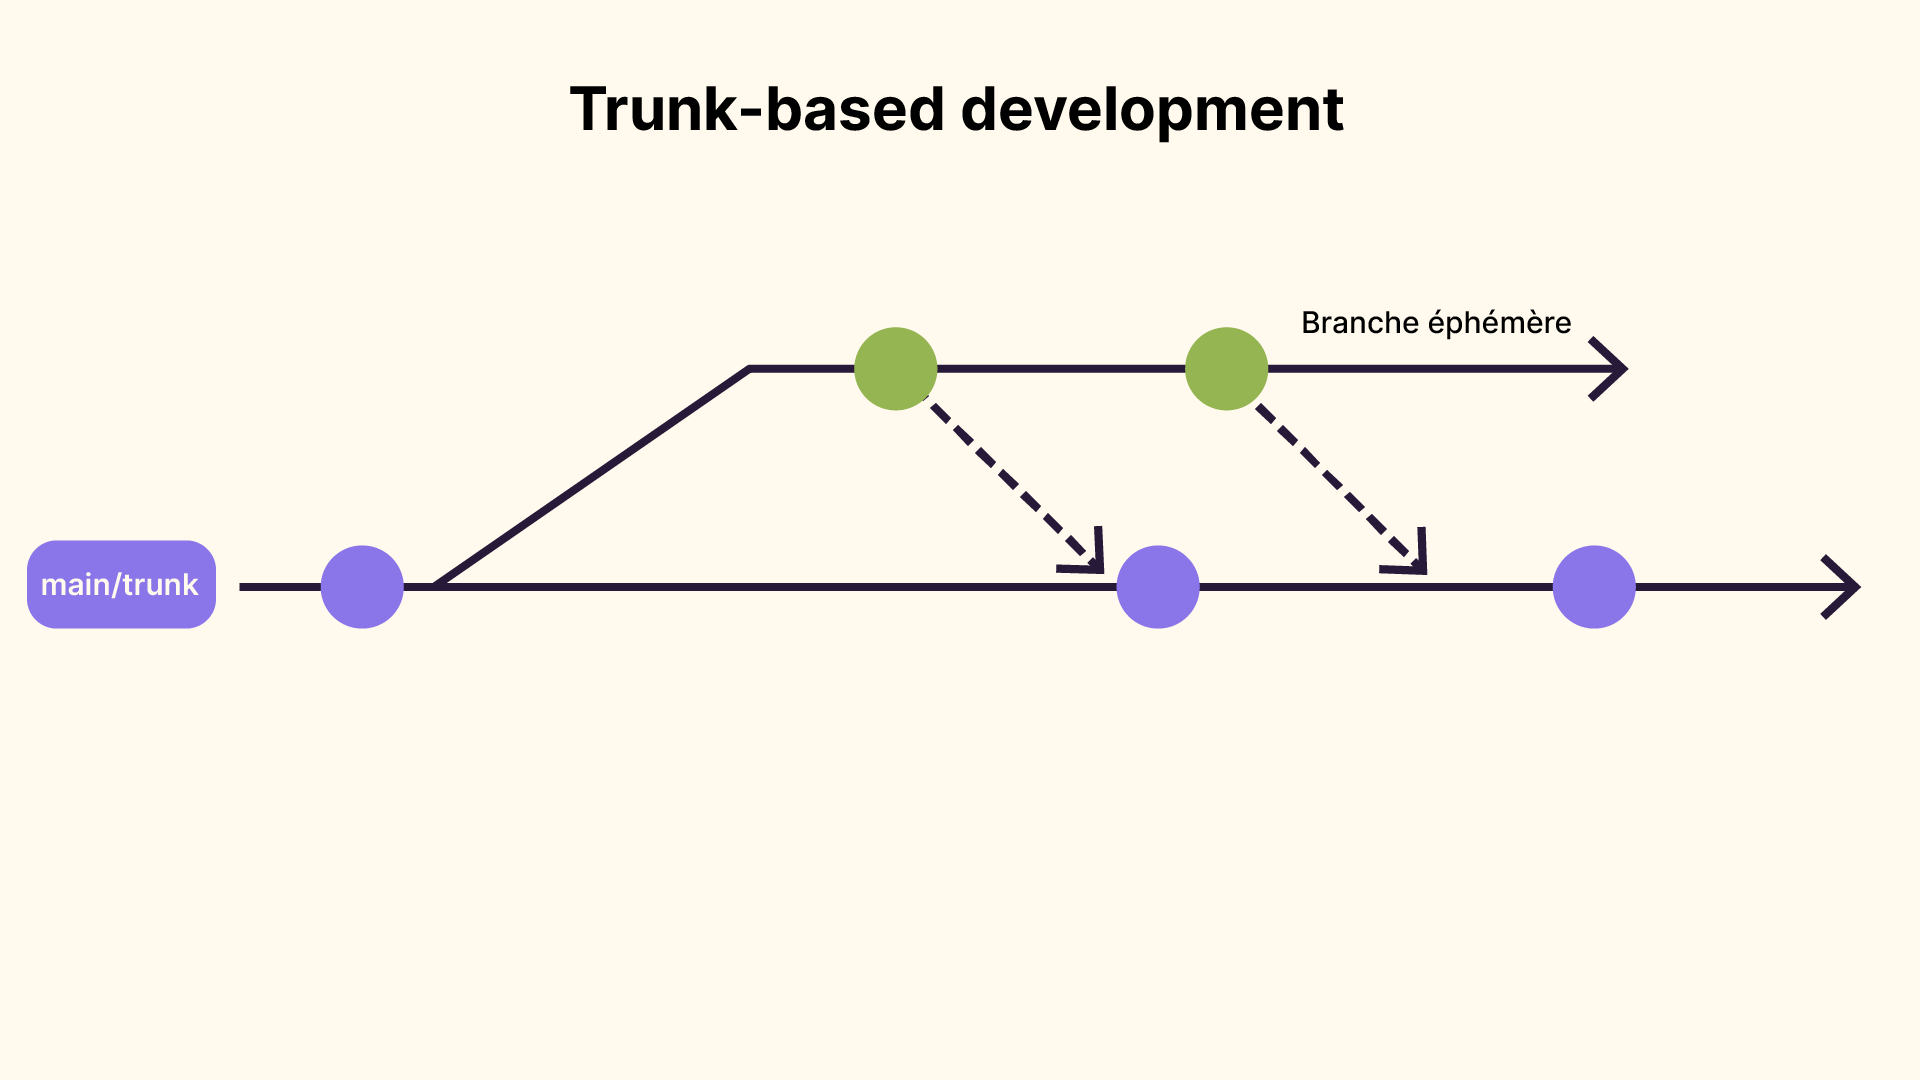 Le trunk-based development se compose d'une branche principale et de branches éphémères que l'on merge ensuite sur la branche principale.